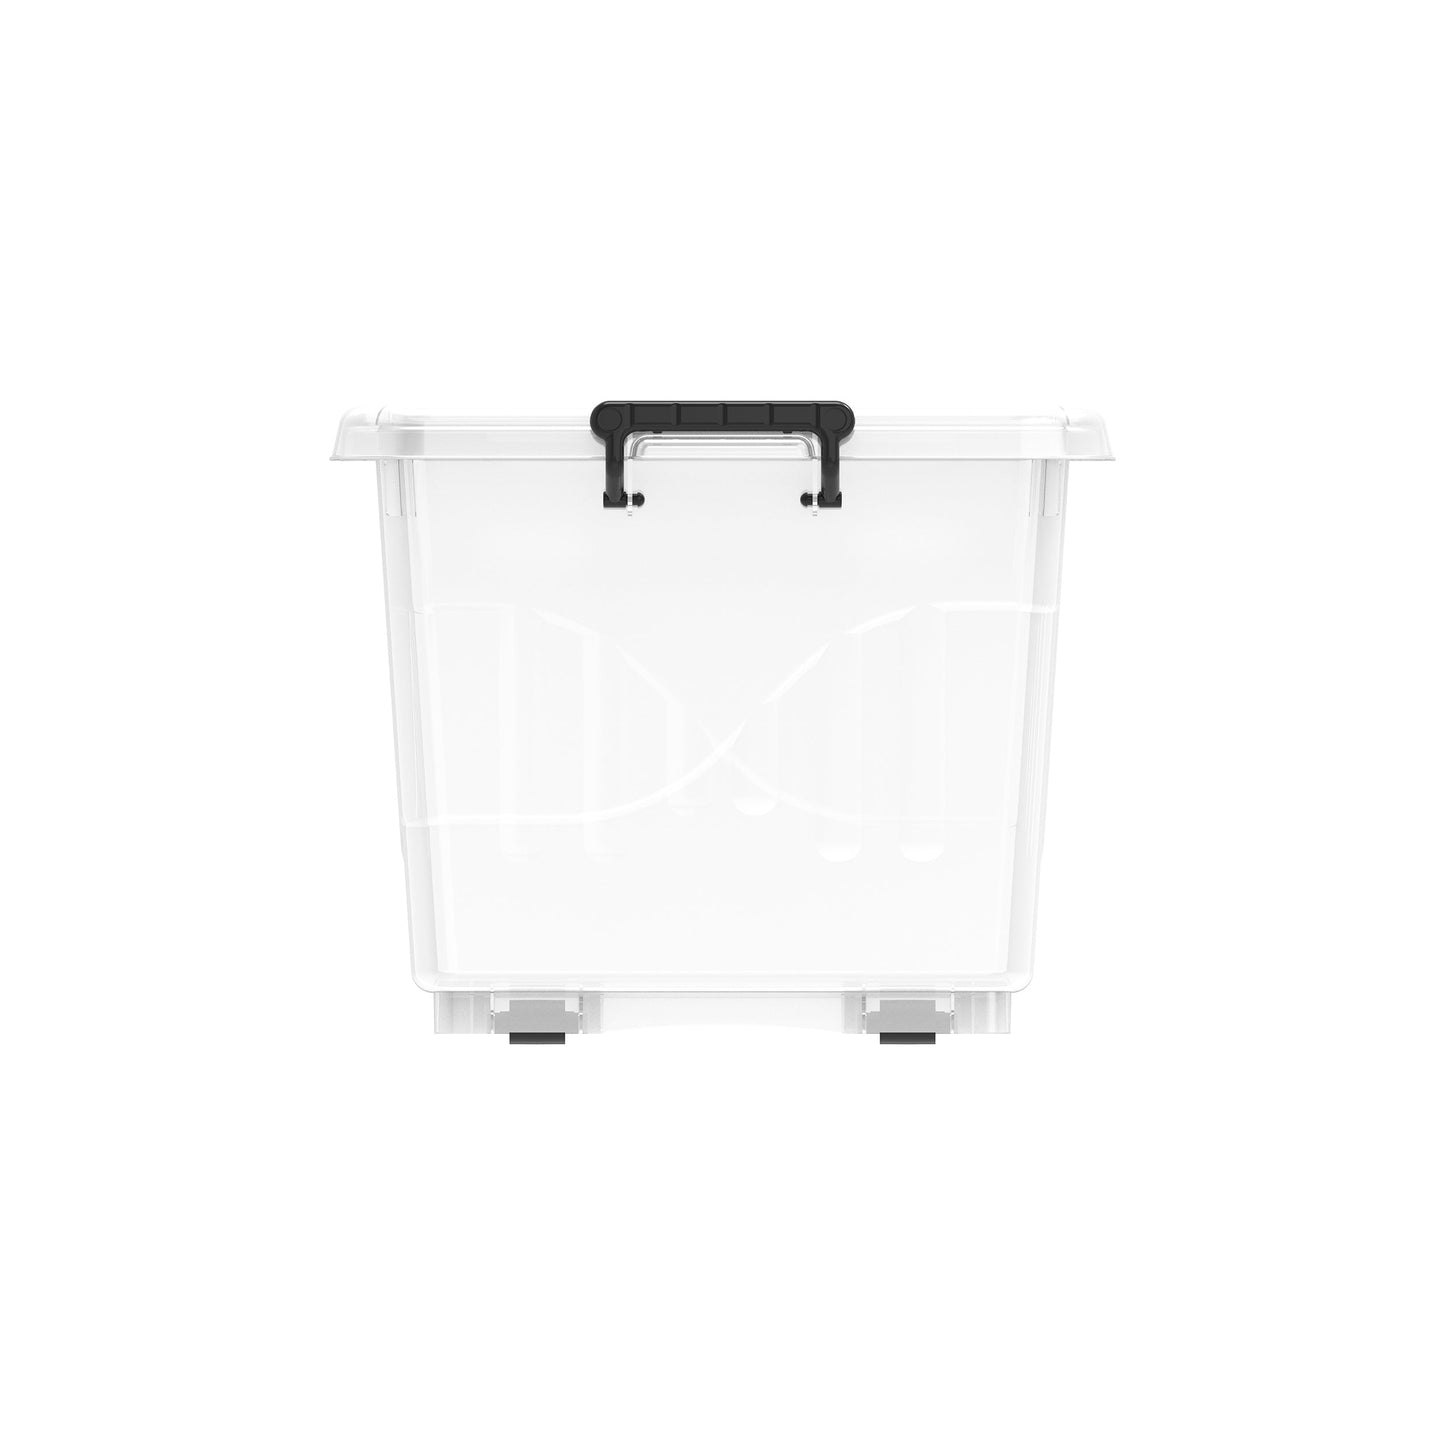 33L Clear Plastic Storage Box with Wheels & Lockable Lid - Cosmoplast Kuwait